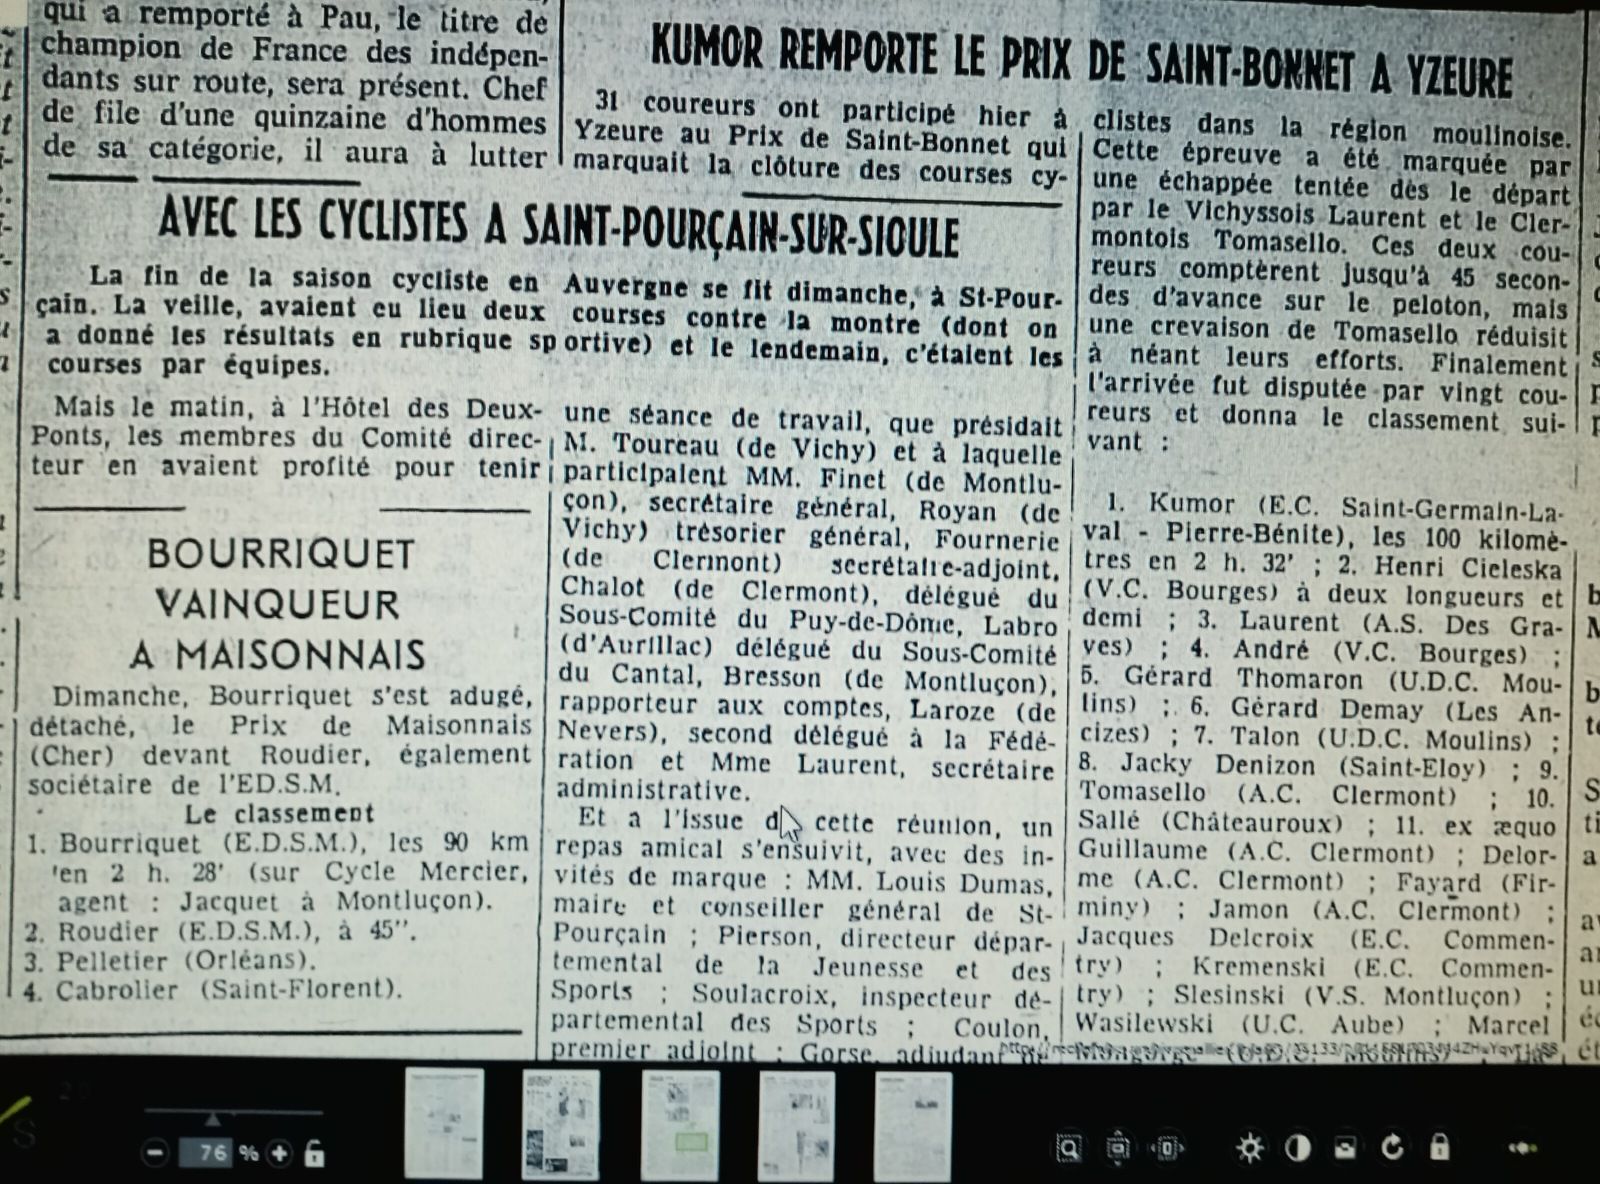 La saison cycliste 1961 en Auvergne (1er au 9 octobre)